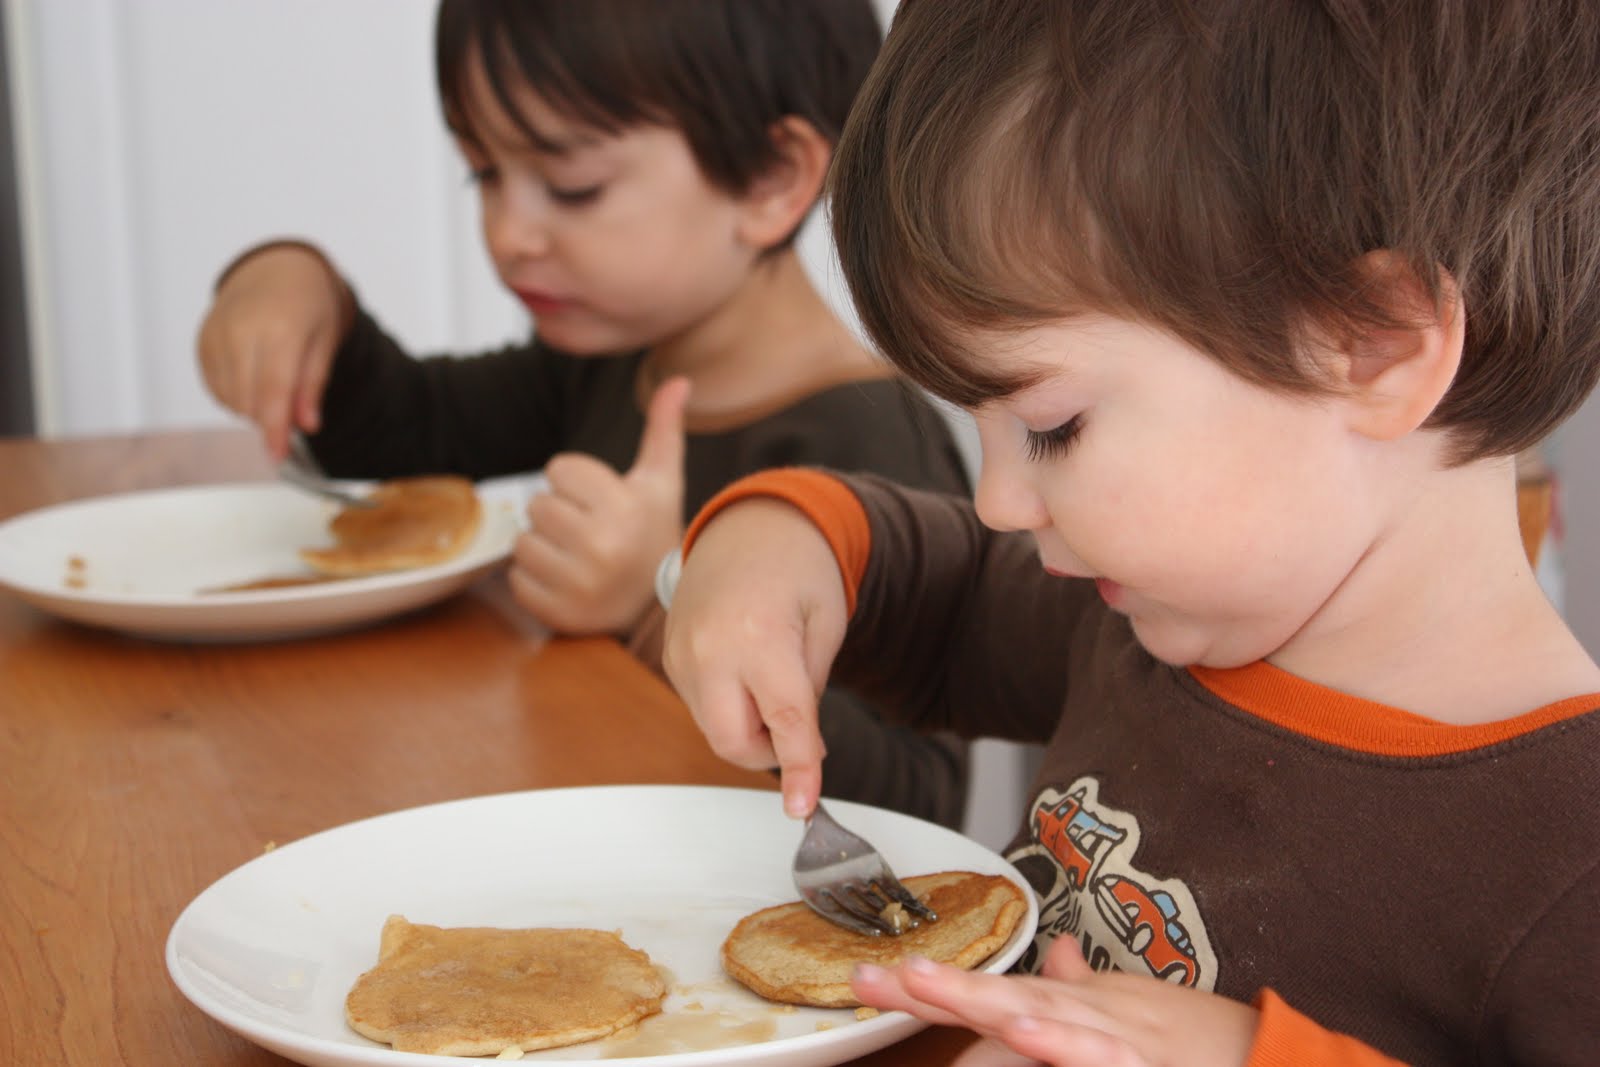 Pancake Breakfast Ideas for Kids